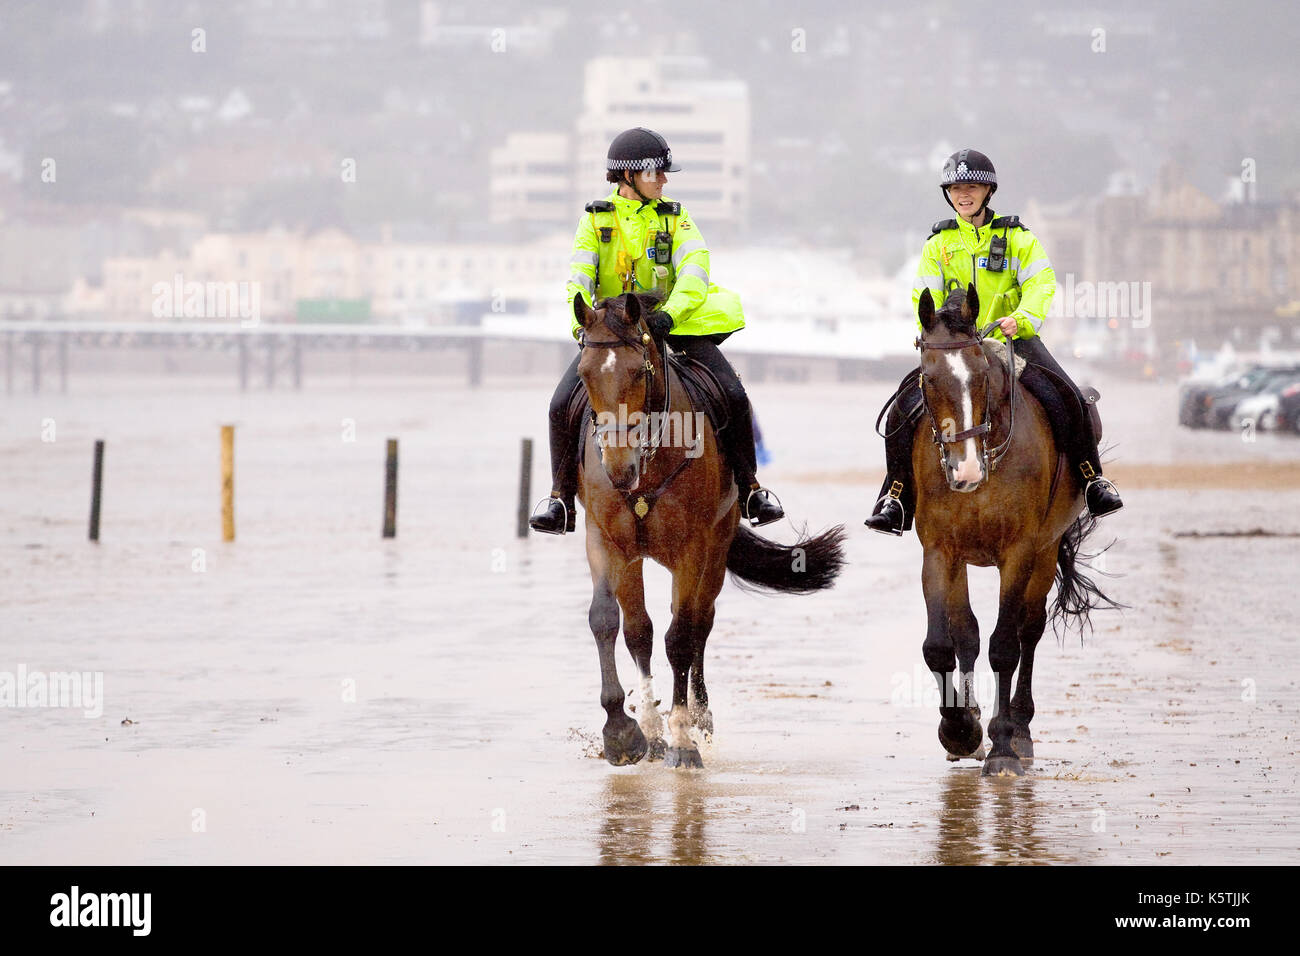 Deux mouned police woman, en patrouille, en uniformes fluorescents équitation.leurs chevaux de police le long d'une plage dans le vent humide. Banque D'Images